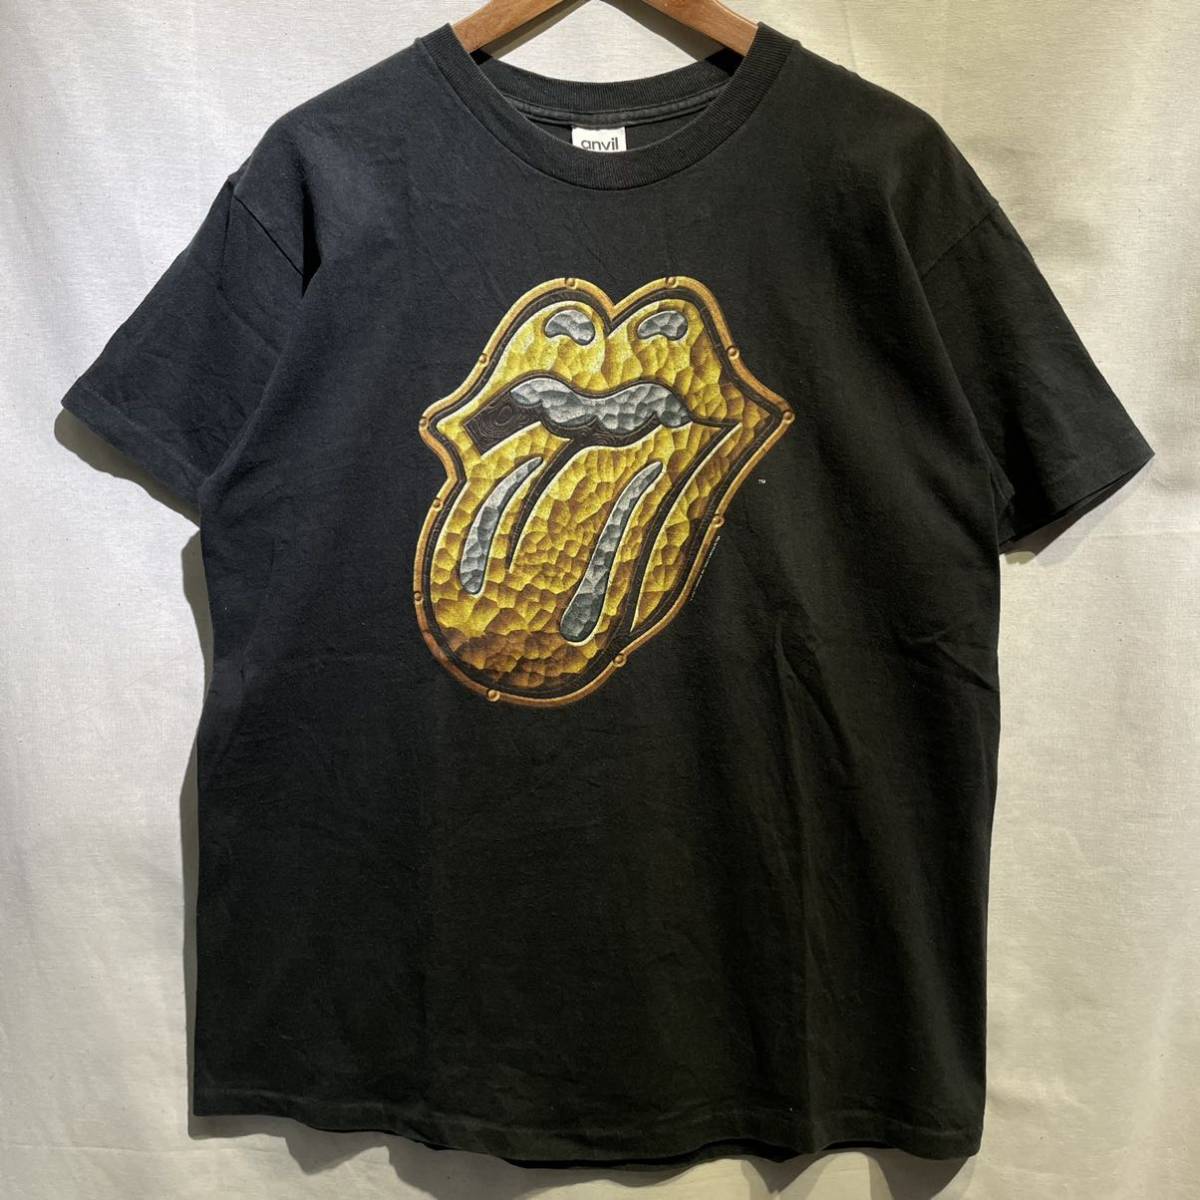 【希少】’97 Rolling Stones Tシャツ USA製 anvil ヴィンテージ L バンド 90s / Metallica AC/DC Led Zeppelin Nirvana Pink Floyd 80s